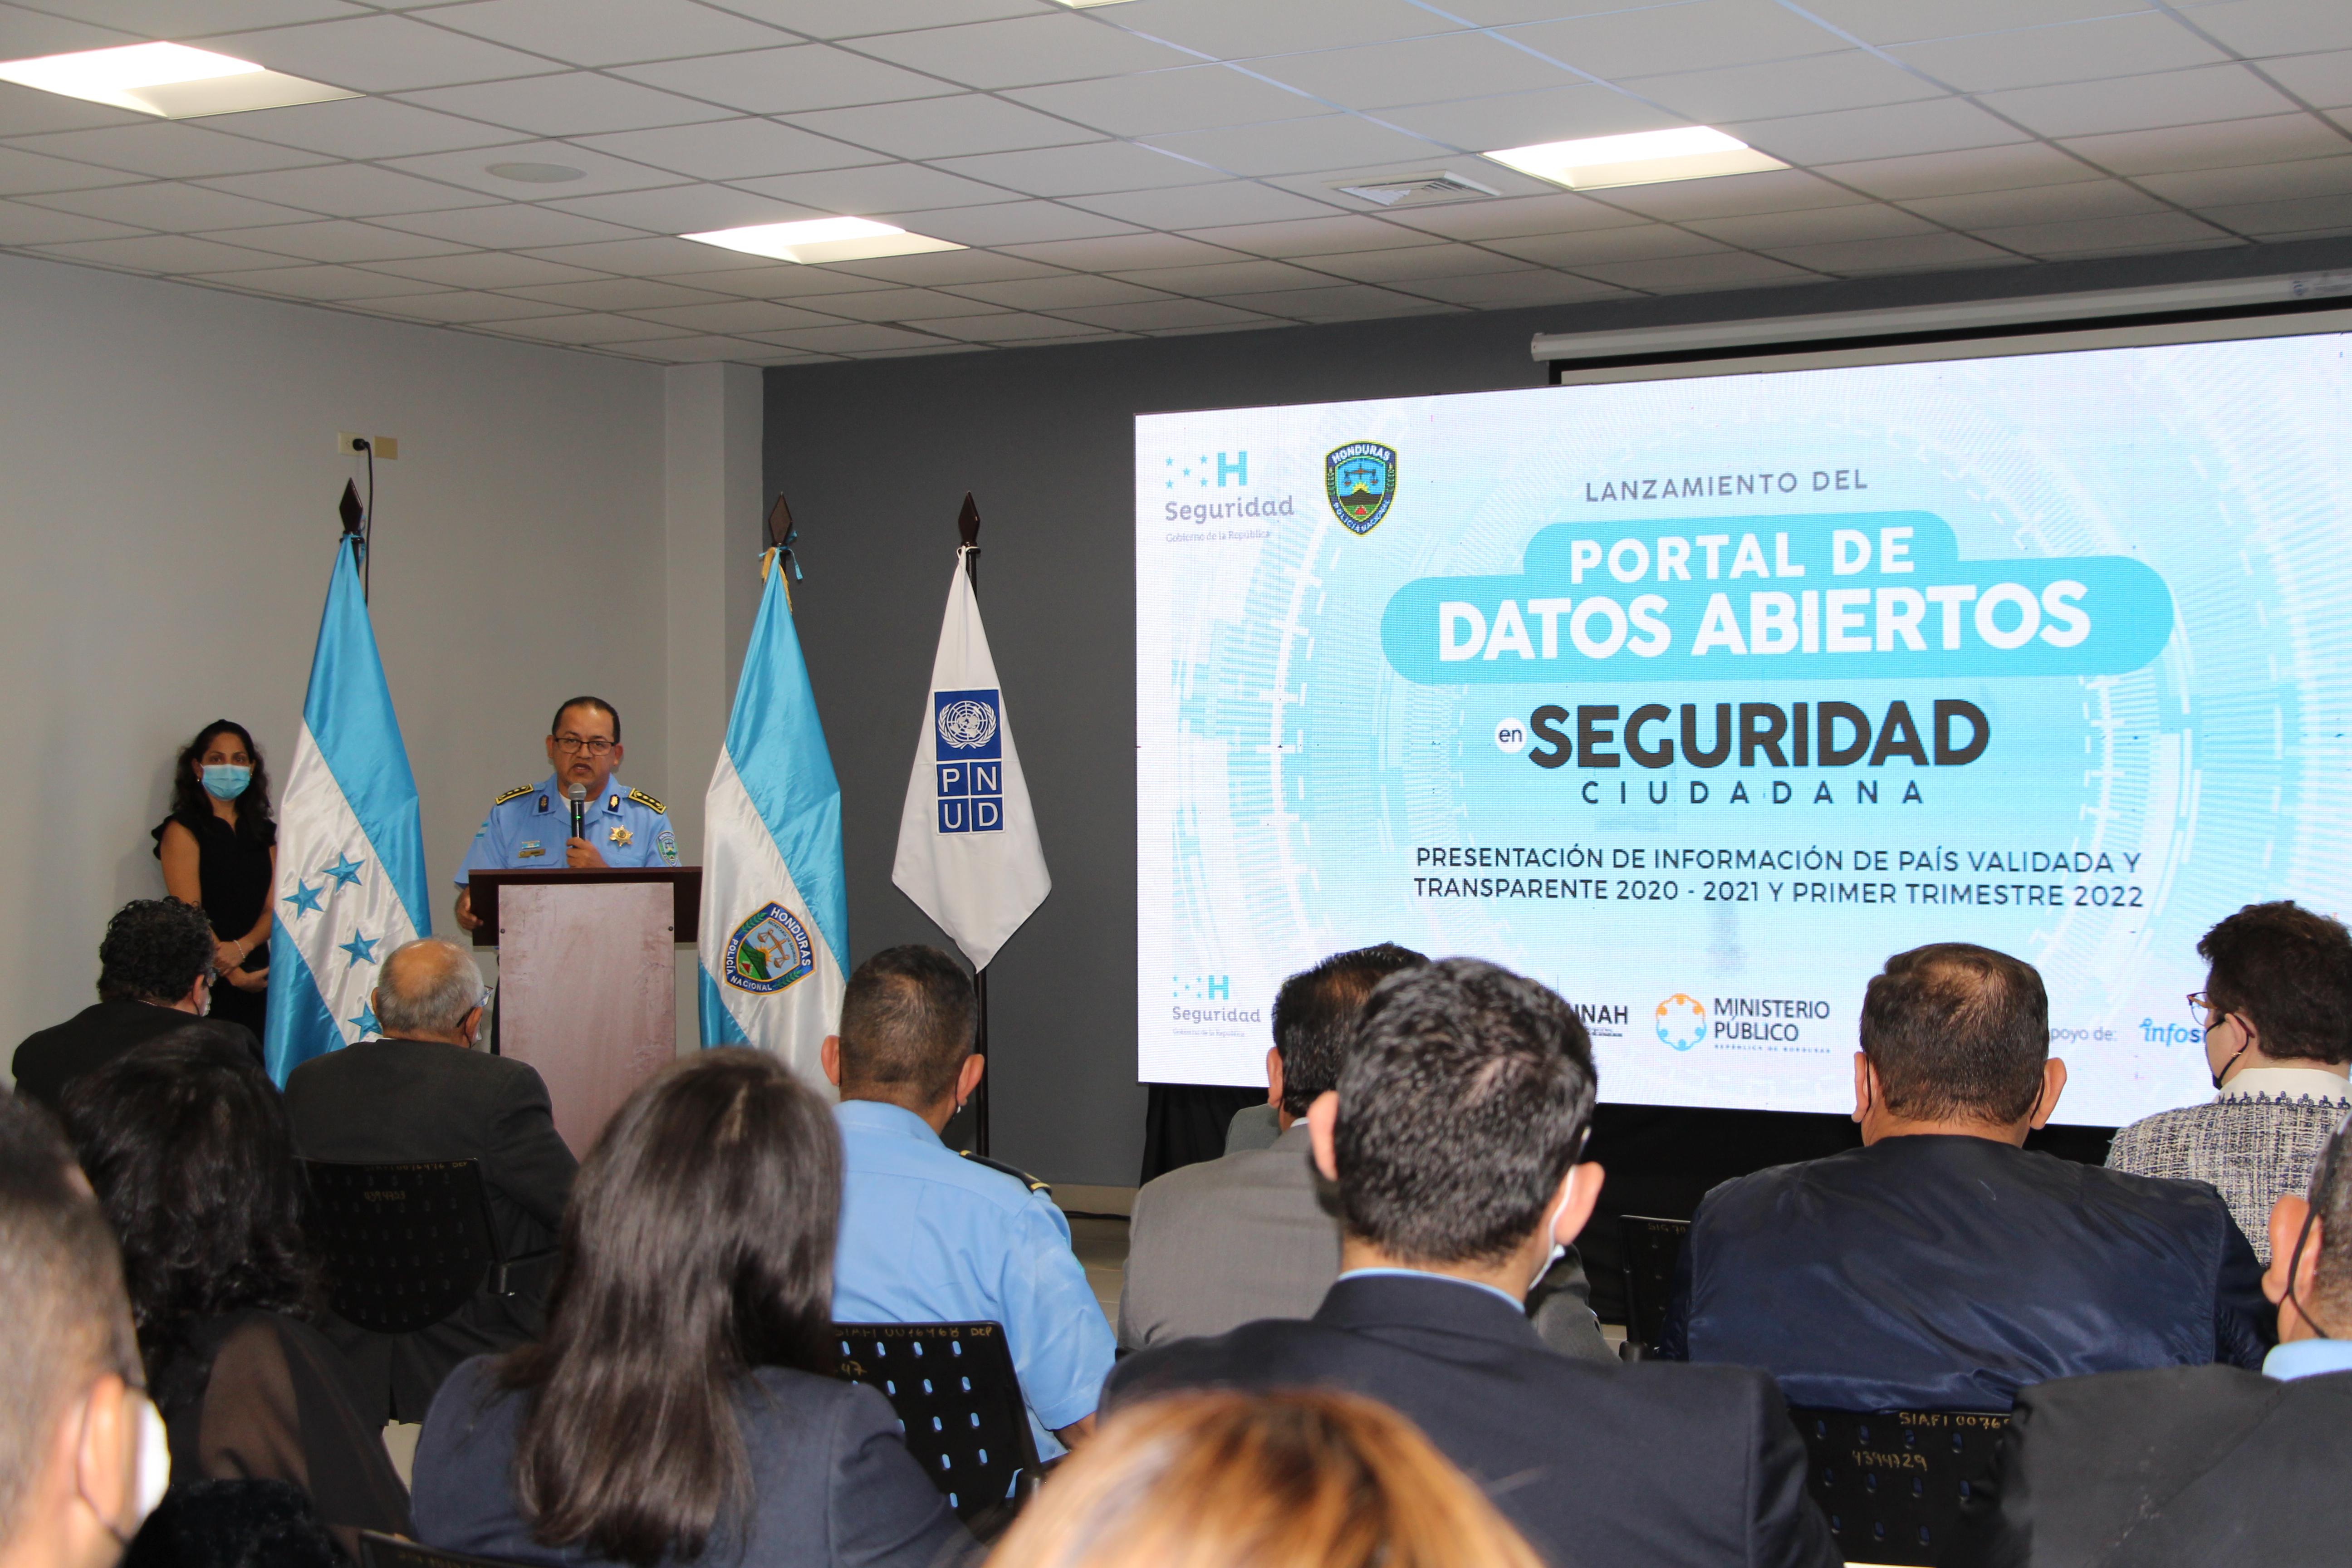 Evento de lanzamiento de Portal de Datos Abiertos sobre Seguridad Ciudadana